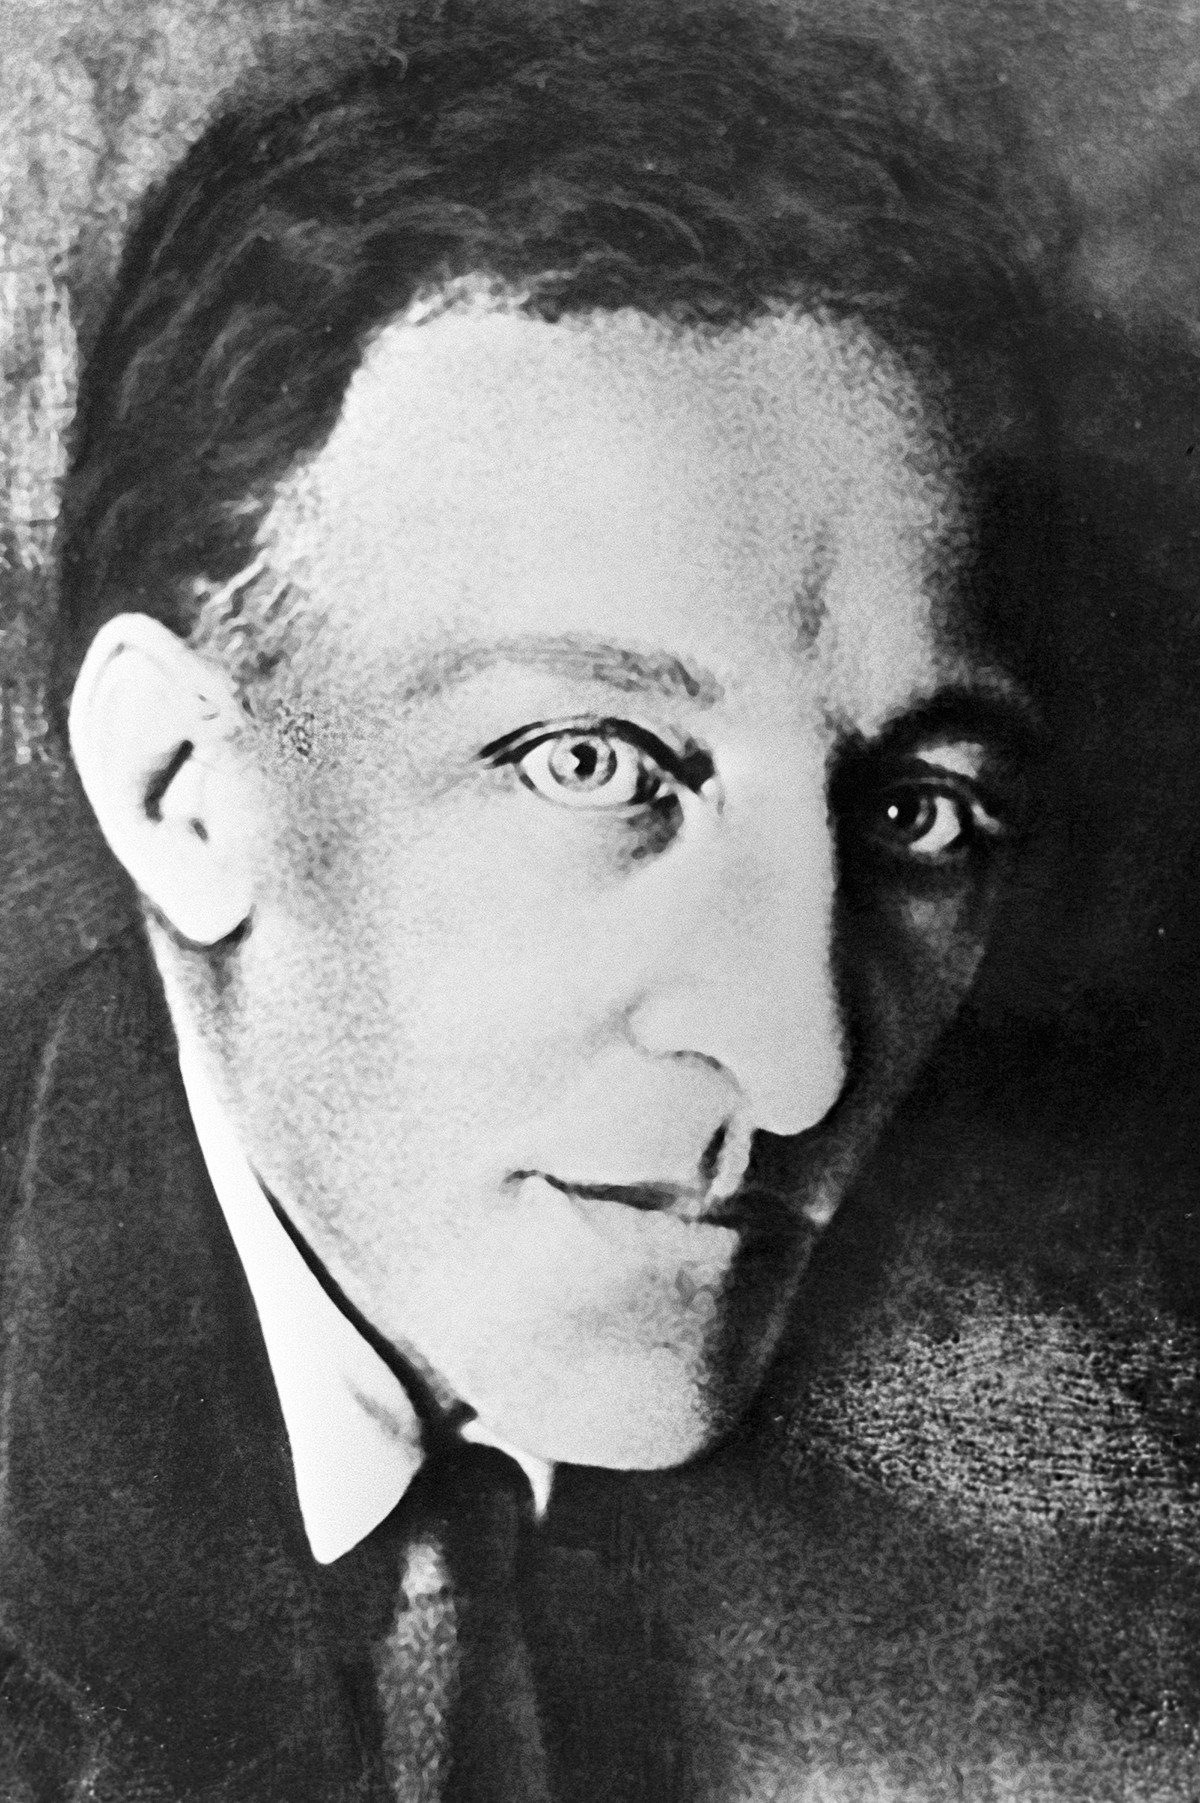 アレクサンドル・ブローク、1920年